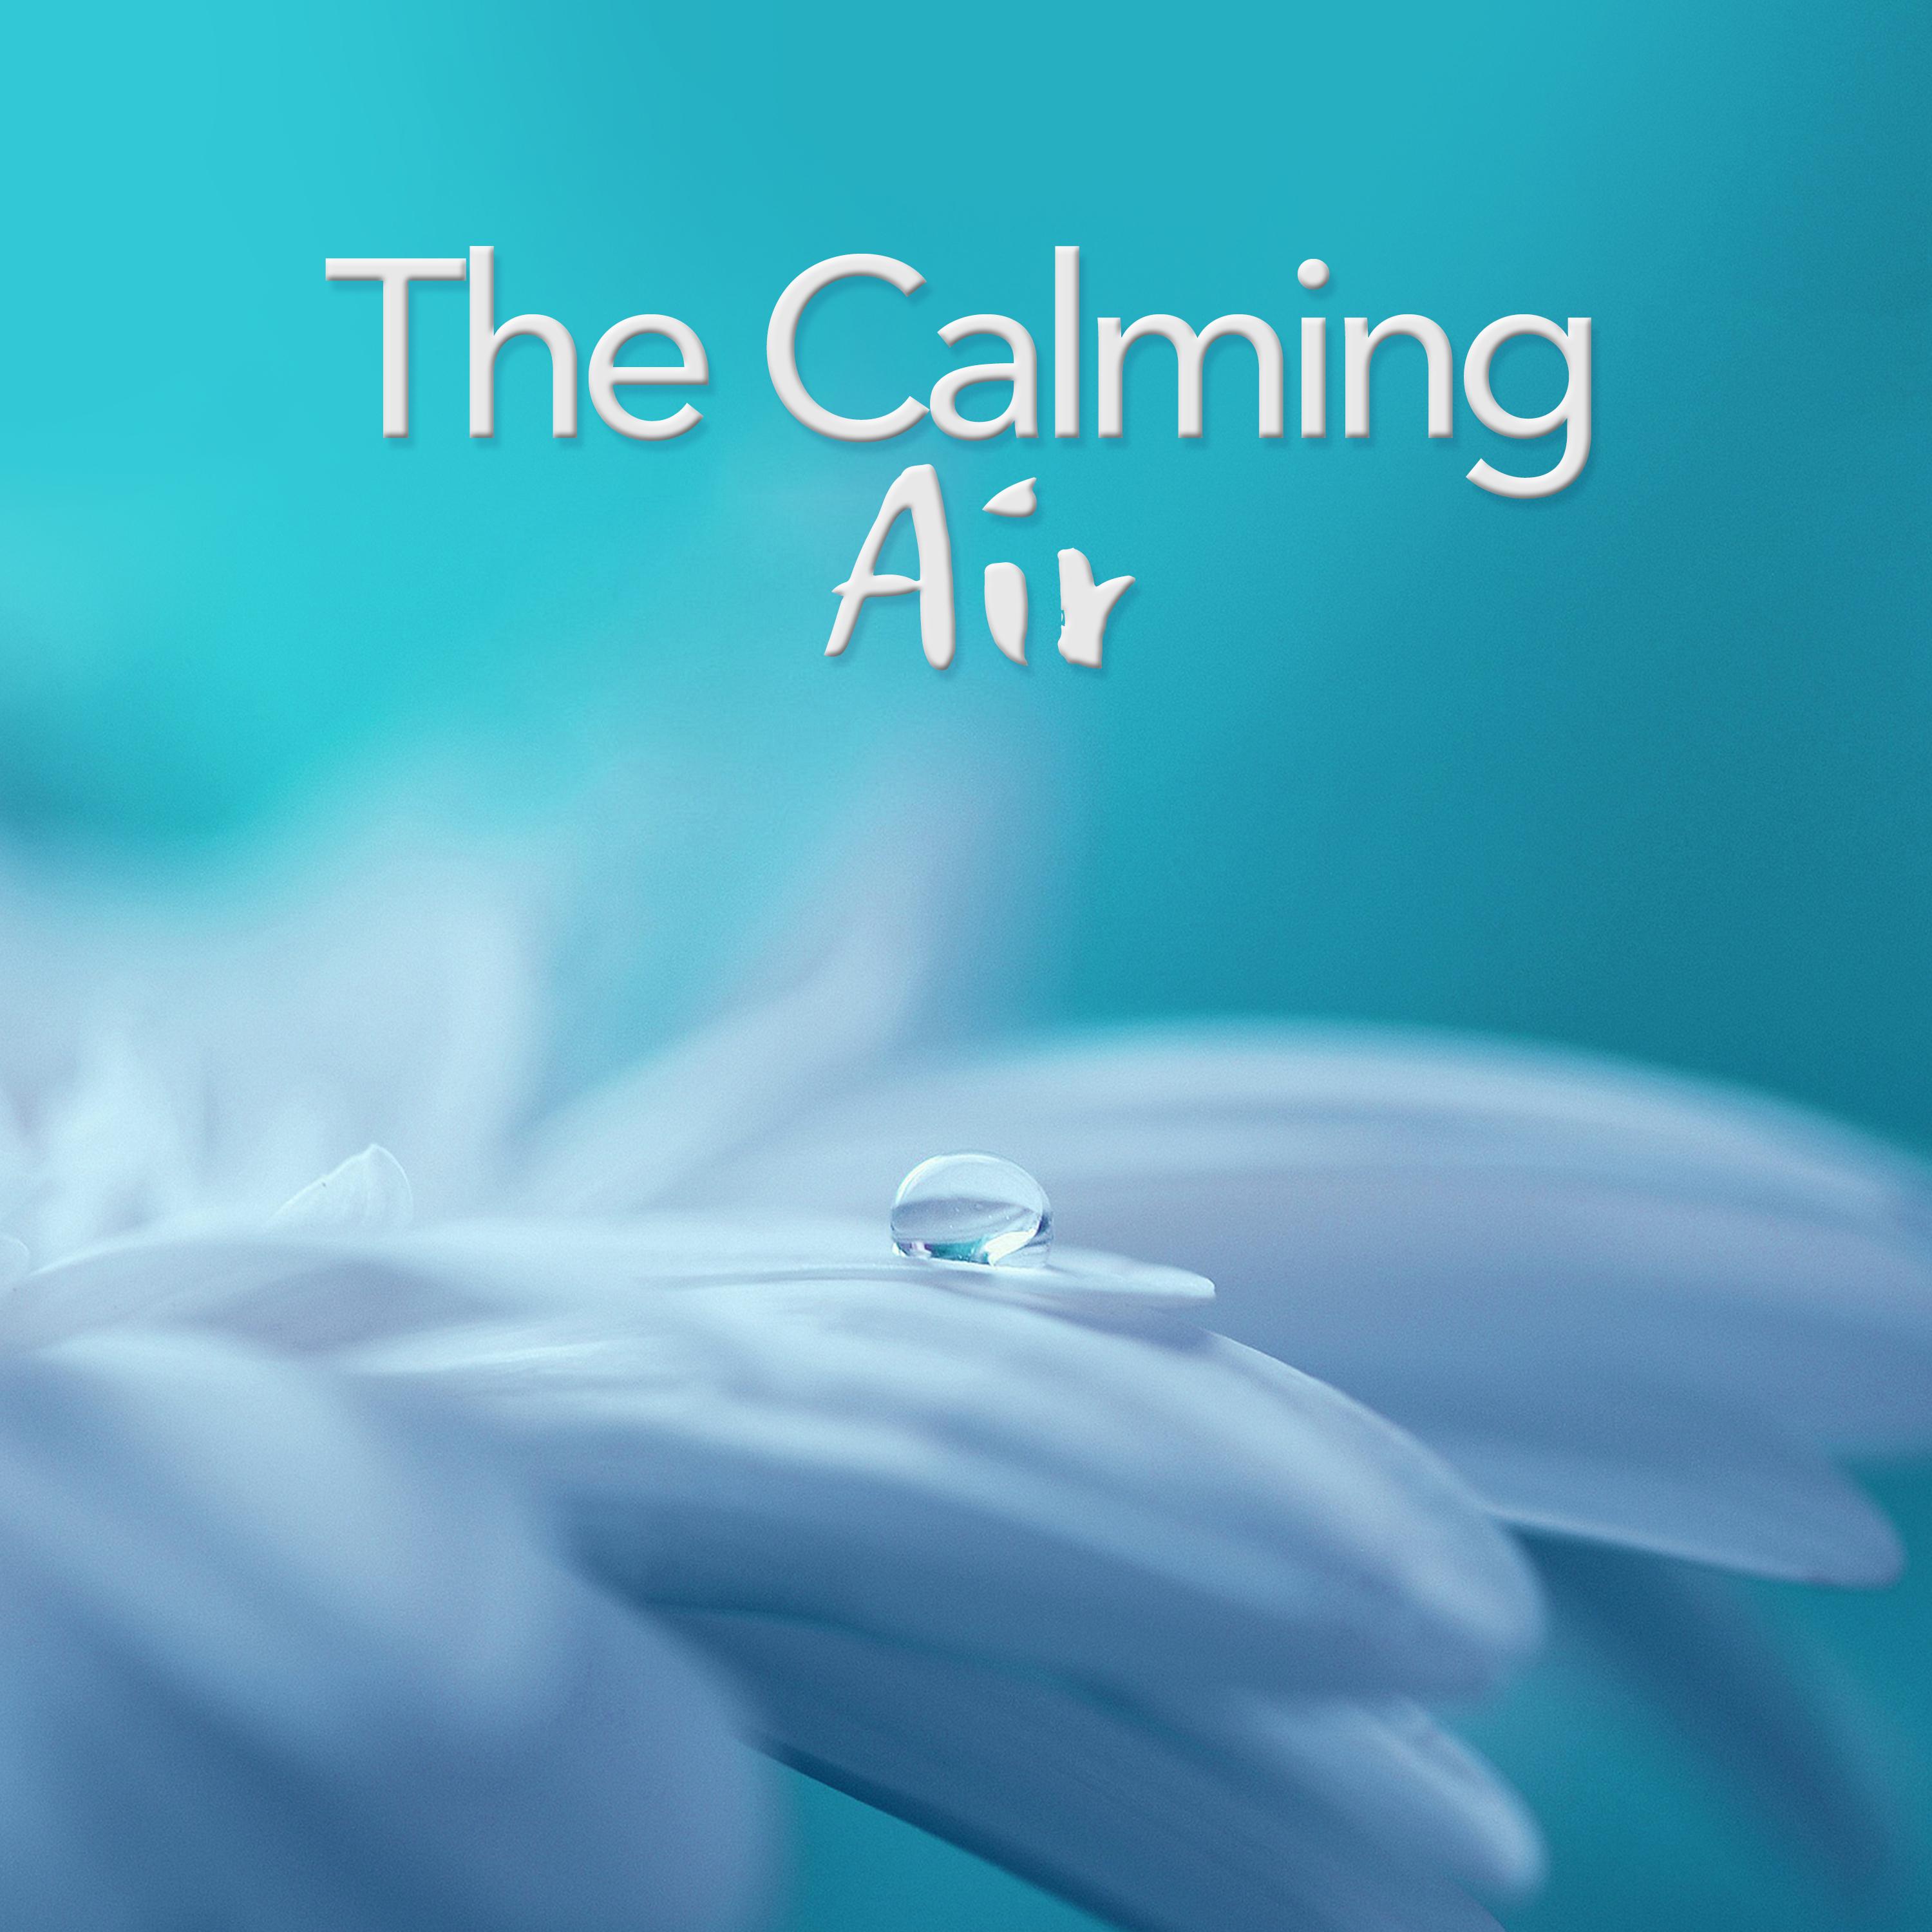 The Calming Air